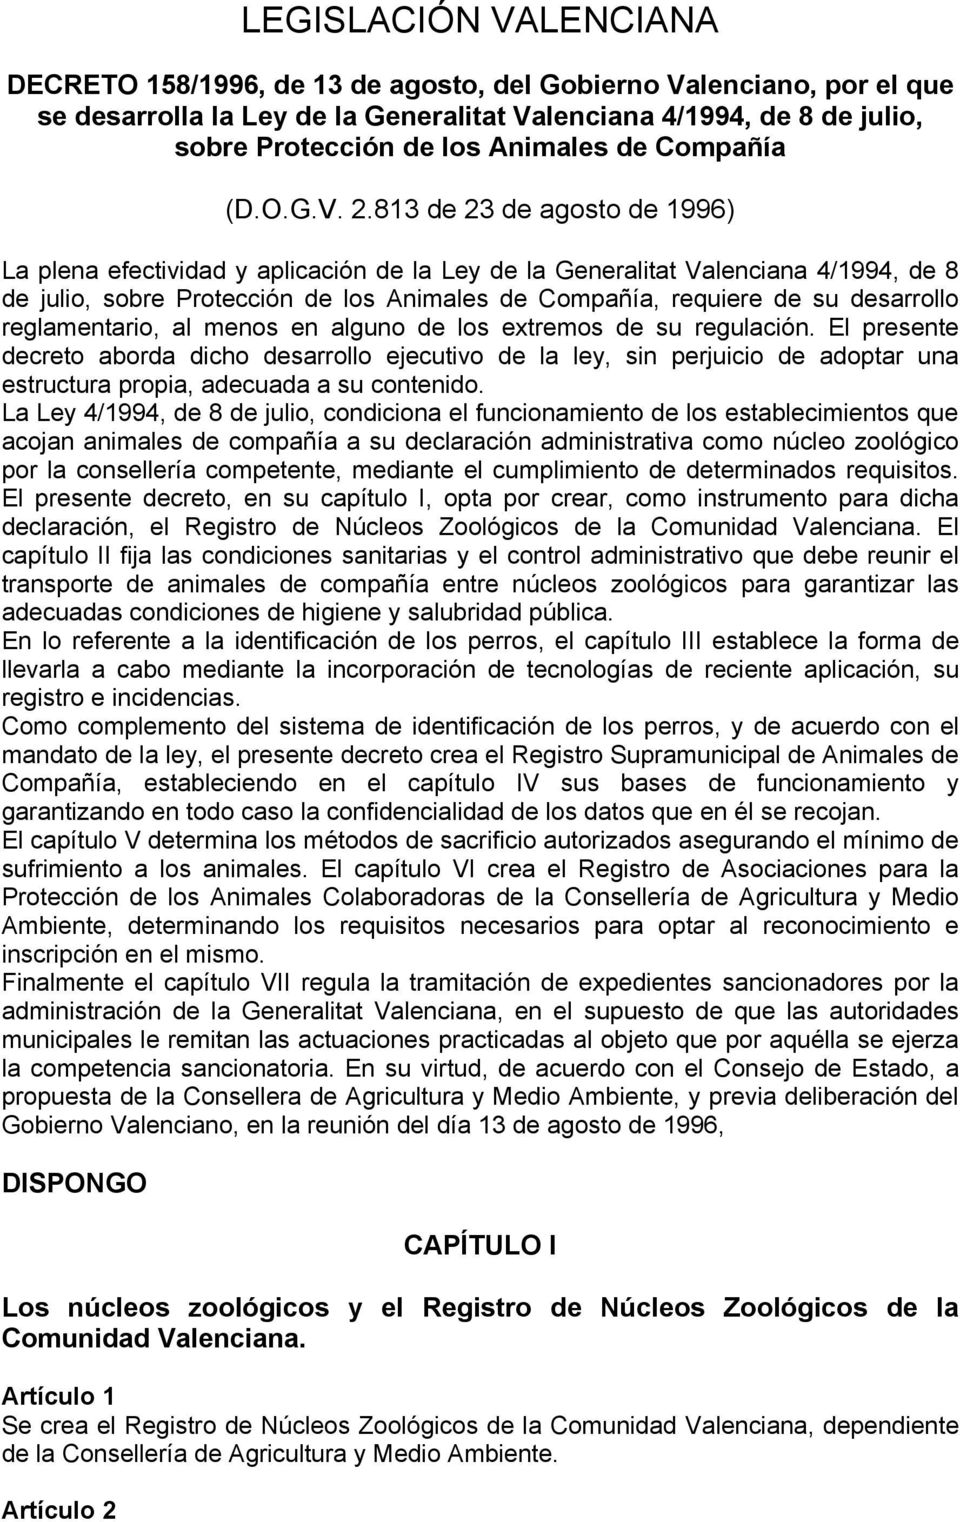 813 de 23 de agosto de 1996) La plena efectividad y aplicación de la Ley de la Generalitat Valenciana 4/1994, de 8 de julio, sobre Protección de los Animales de Compañía, requiere de su desarrollo